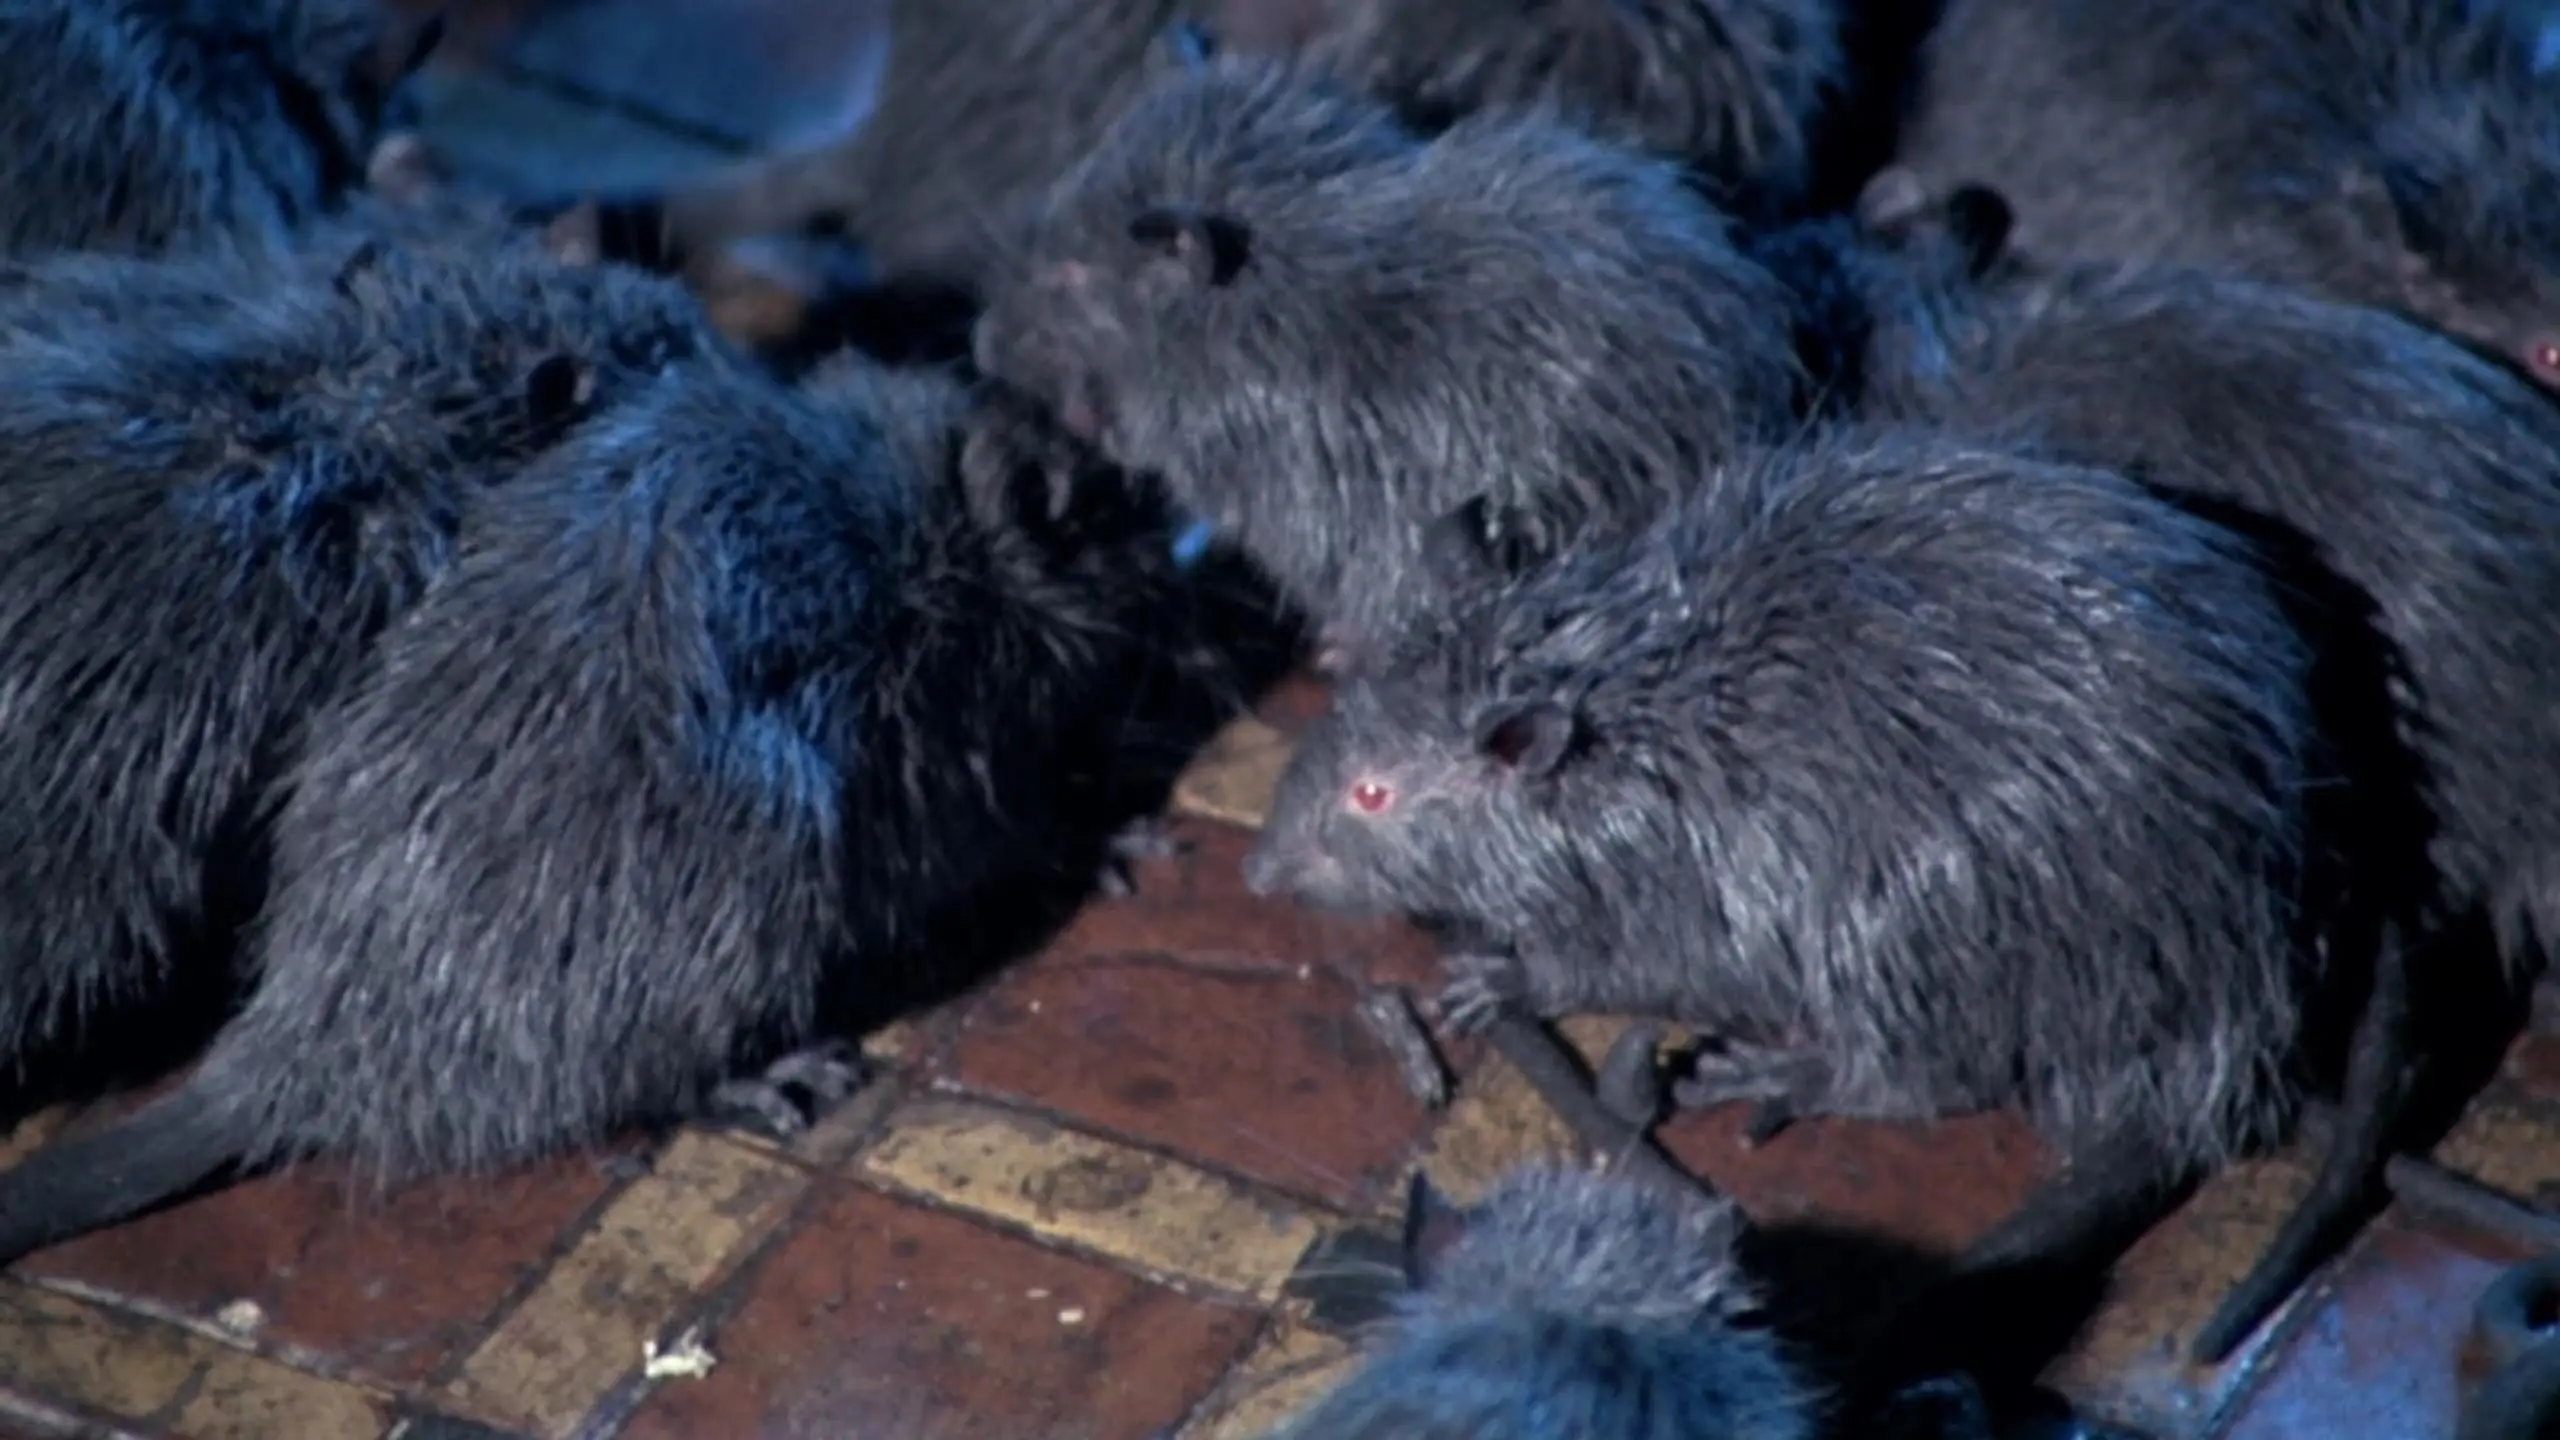 The Riffs III - Die Ratten von Manhattan